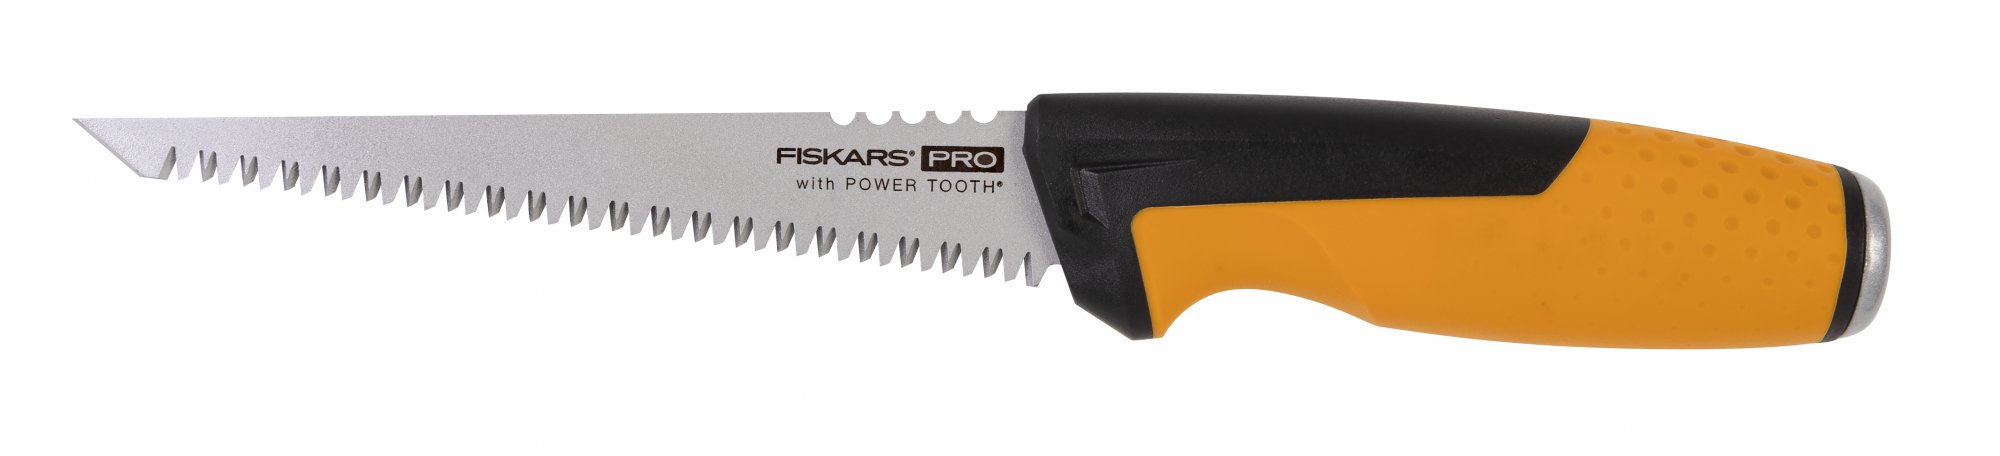 Fiskars 1062935 Pro Power Tooth Kleine metaalzaag - 8 TPI - 15 cm